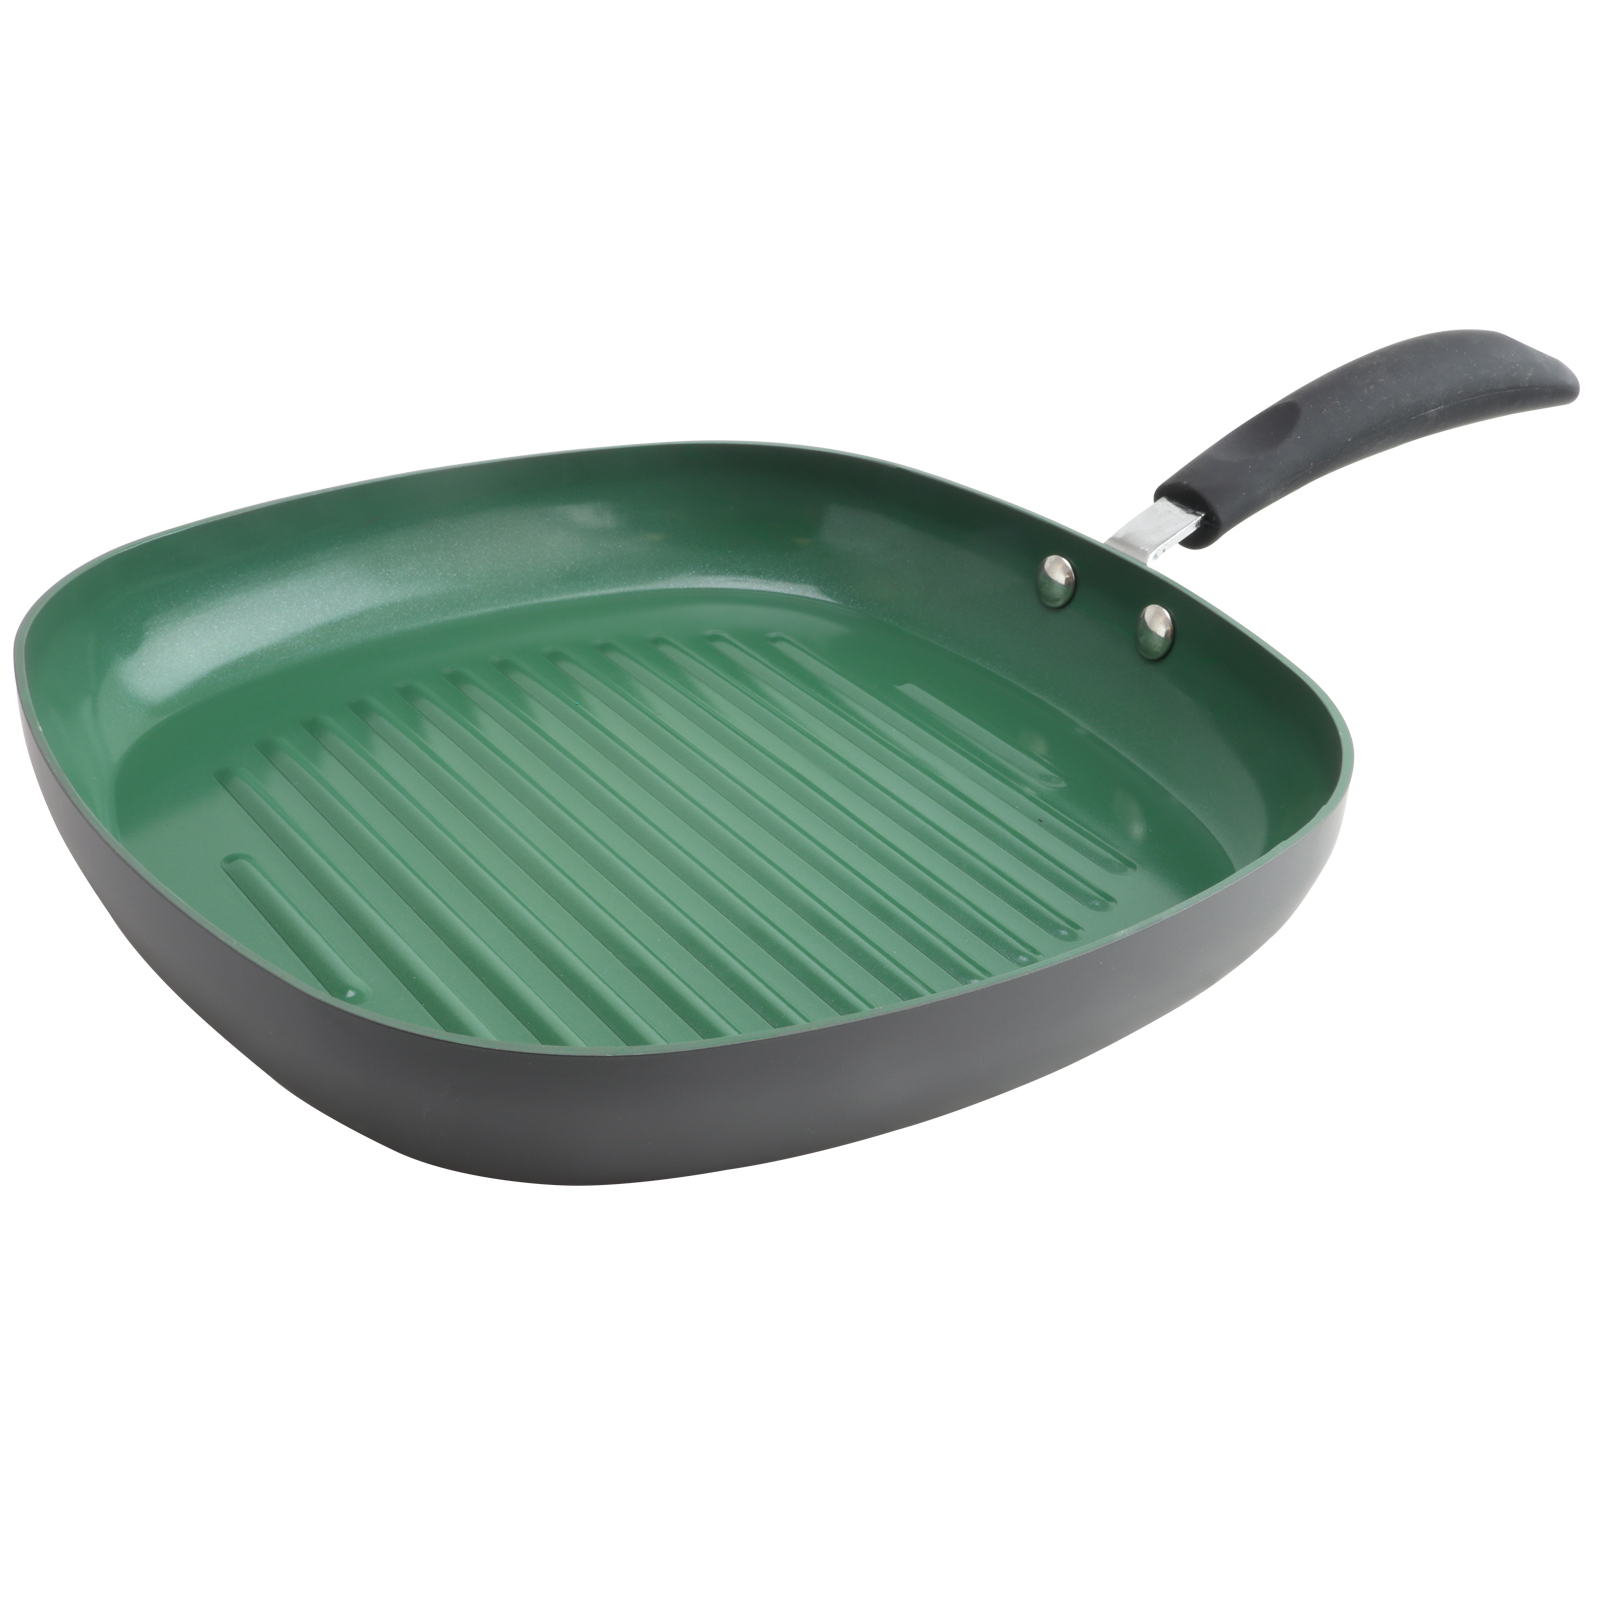 Eco Friendly Home Hummington 11 inch Green Ceramic Non-Stick Grill Pan in Matte Grey